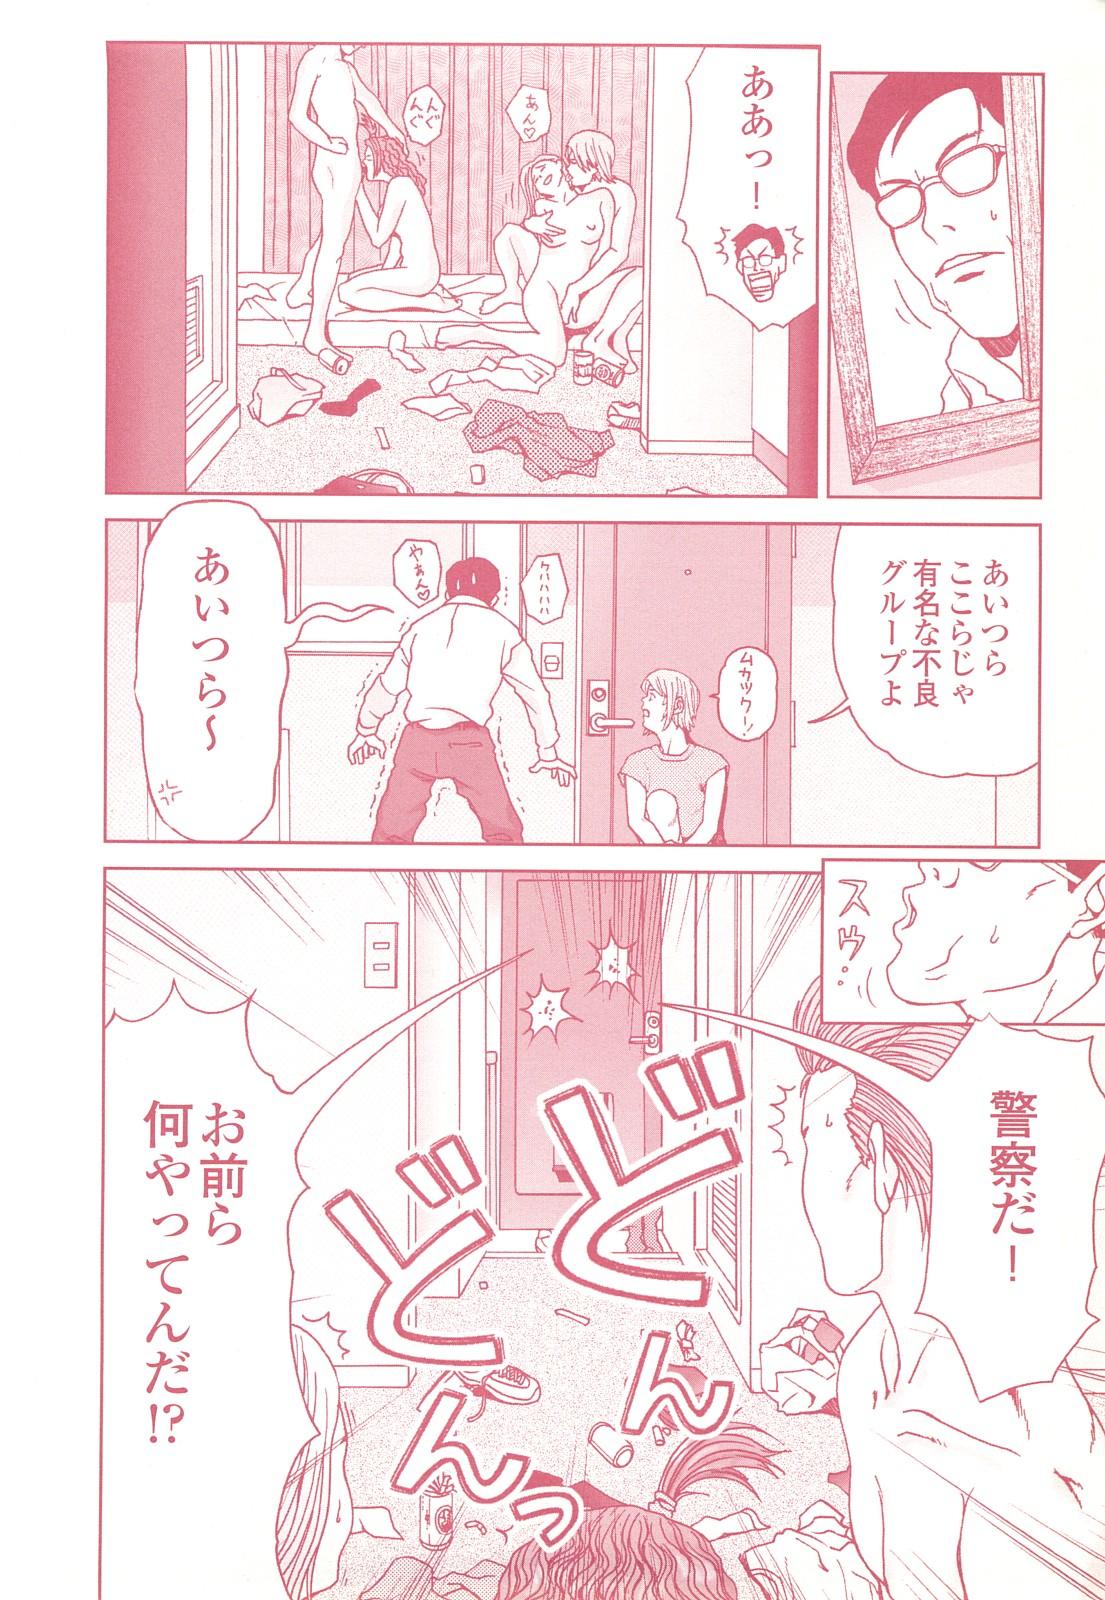 コミック裏モノJAPAN Vol.18 今井のりたつスペシャル号 105